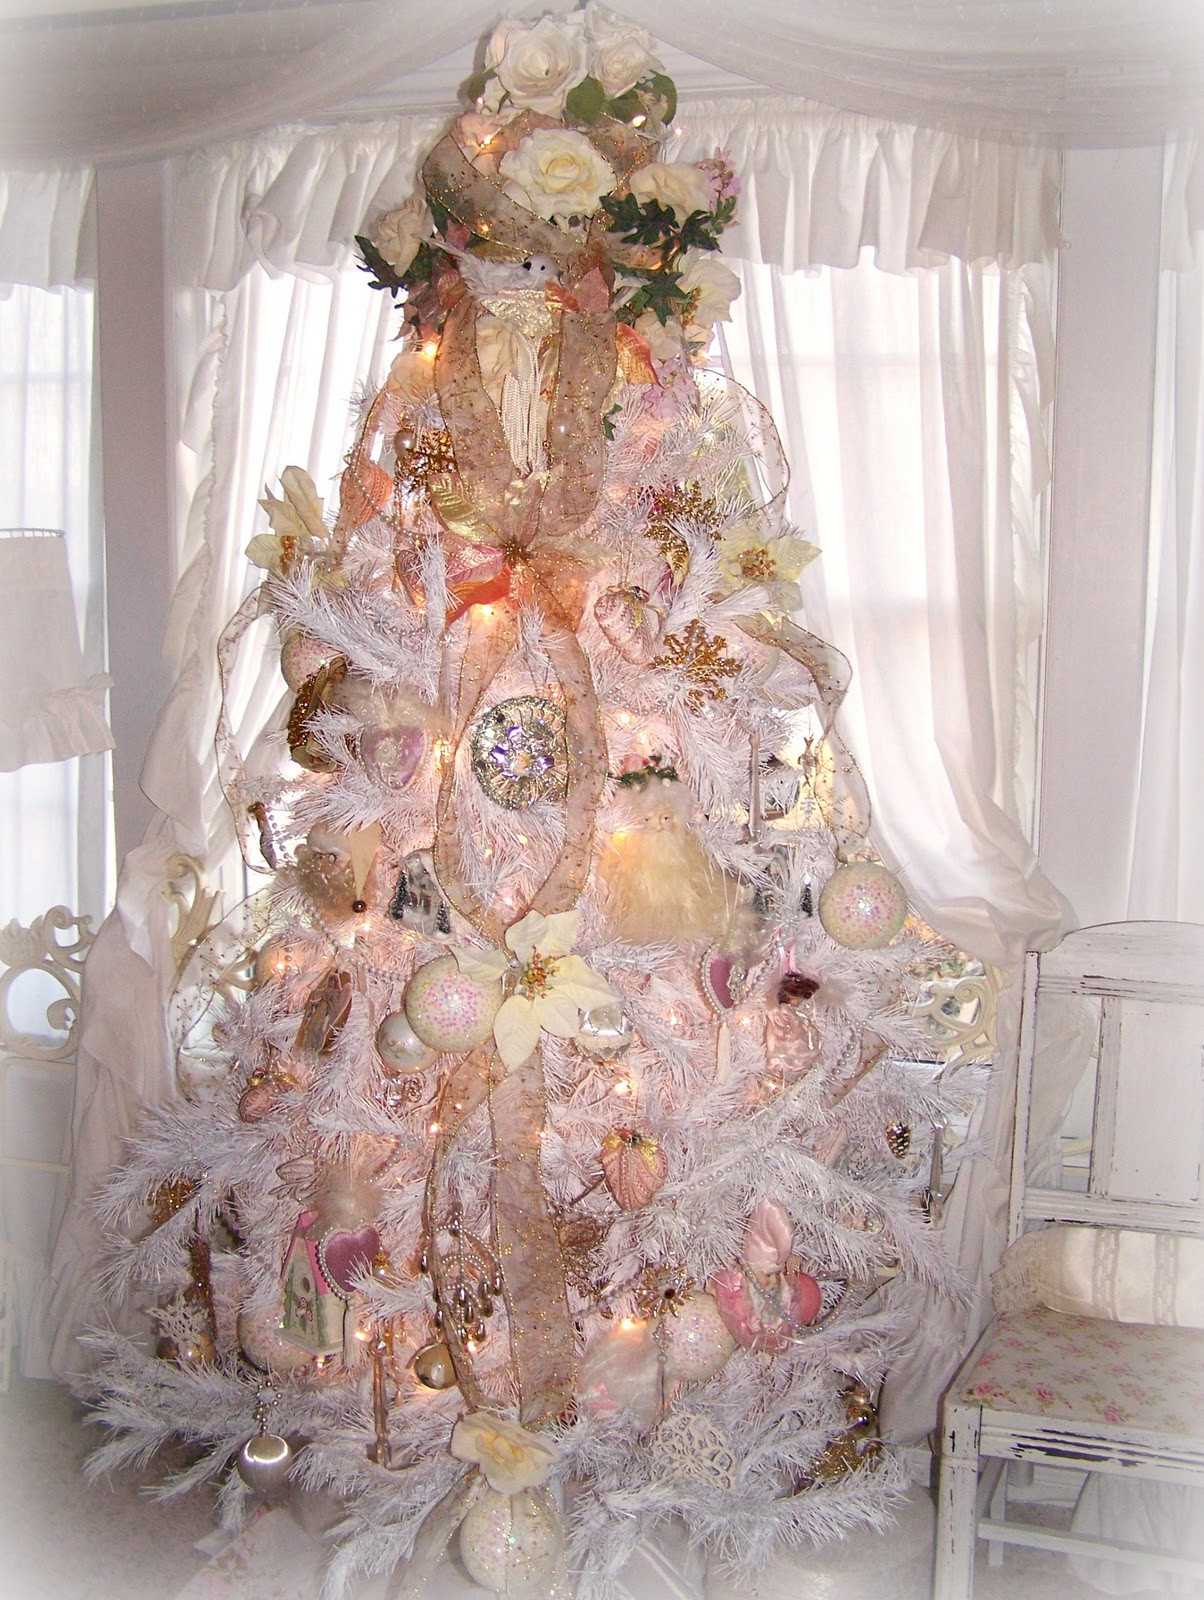 Shabby Chic Christmas Tree Decorations
 Olivia s Romantic Home Shabby Chic White Christmas Tree